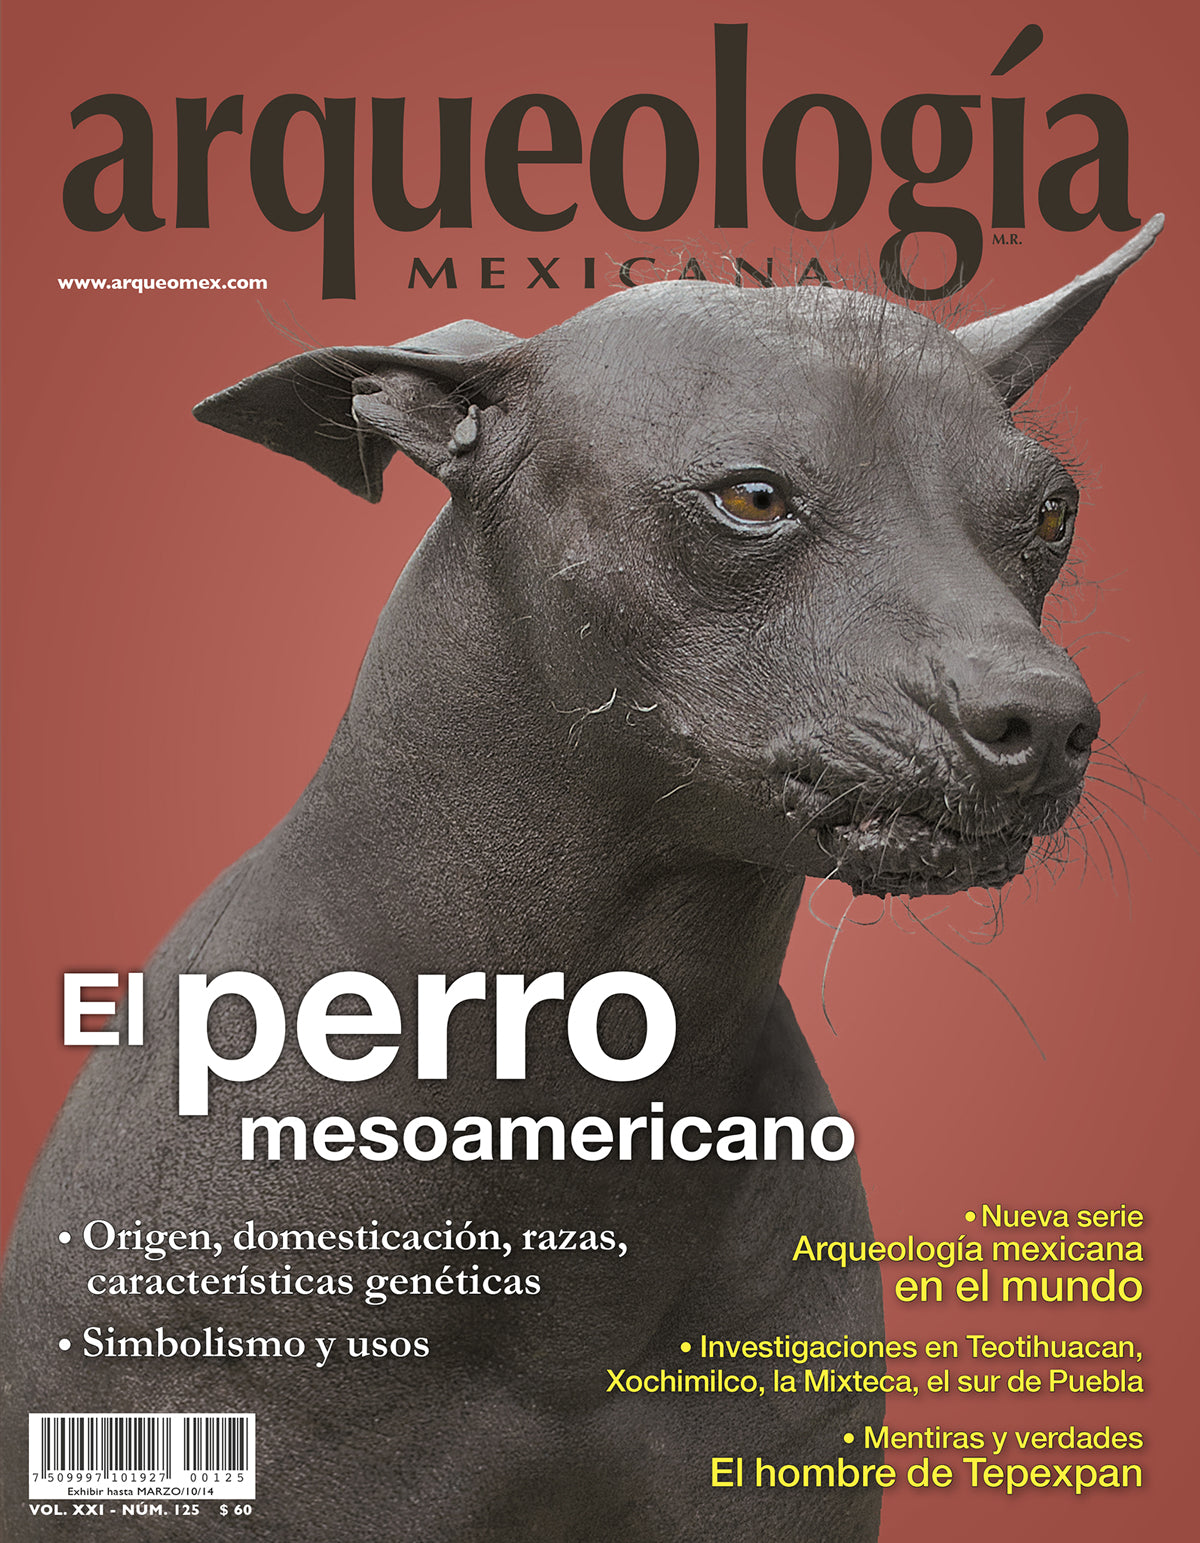 El perro mesoamericano